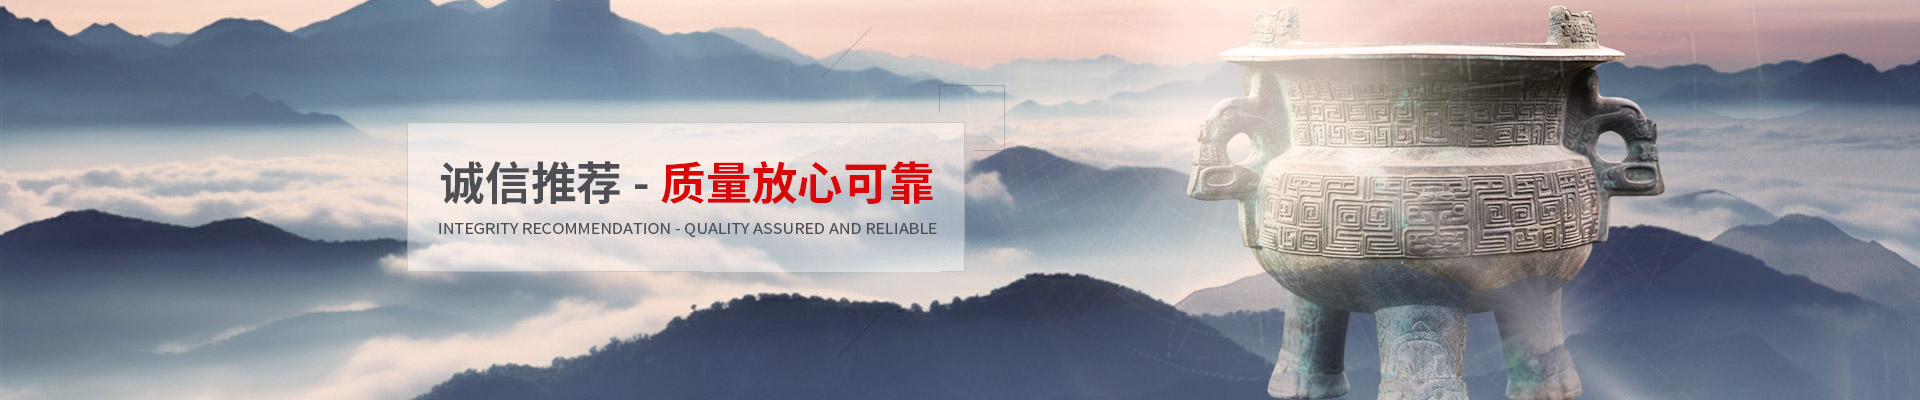 上海强重起重设备服务有限公司公司介绍